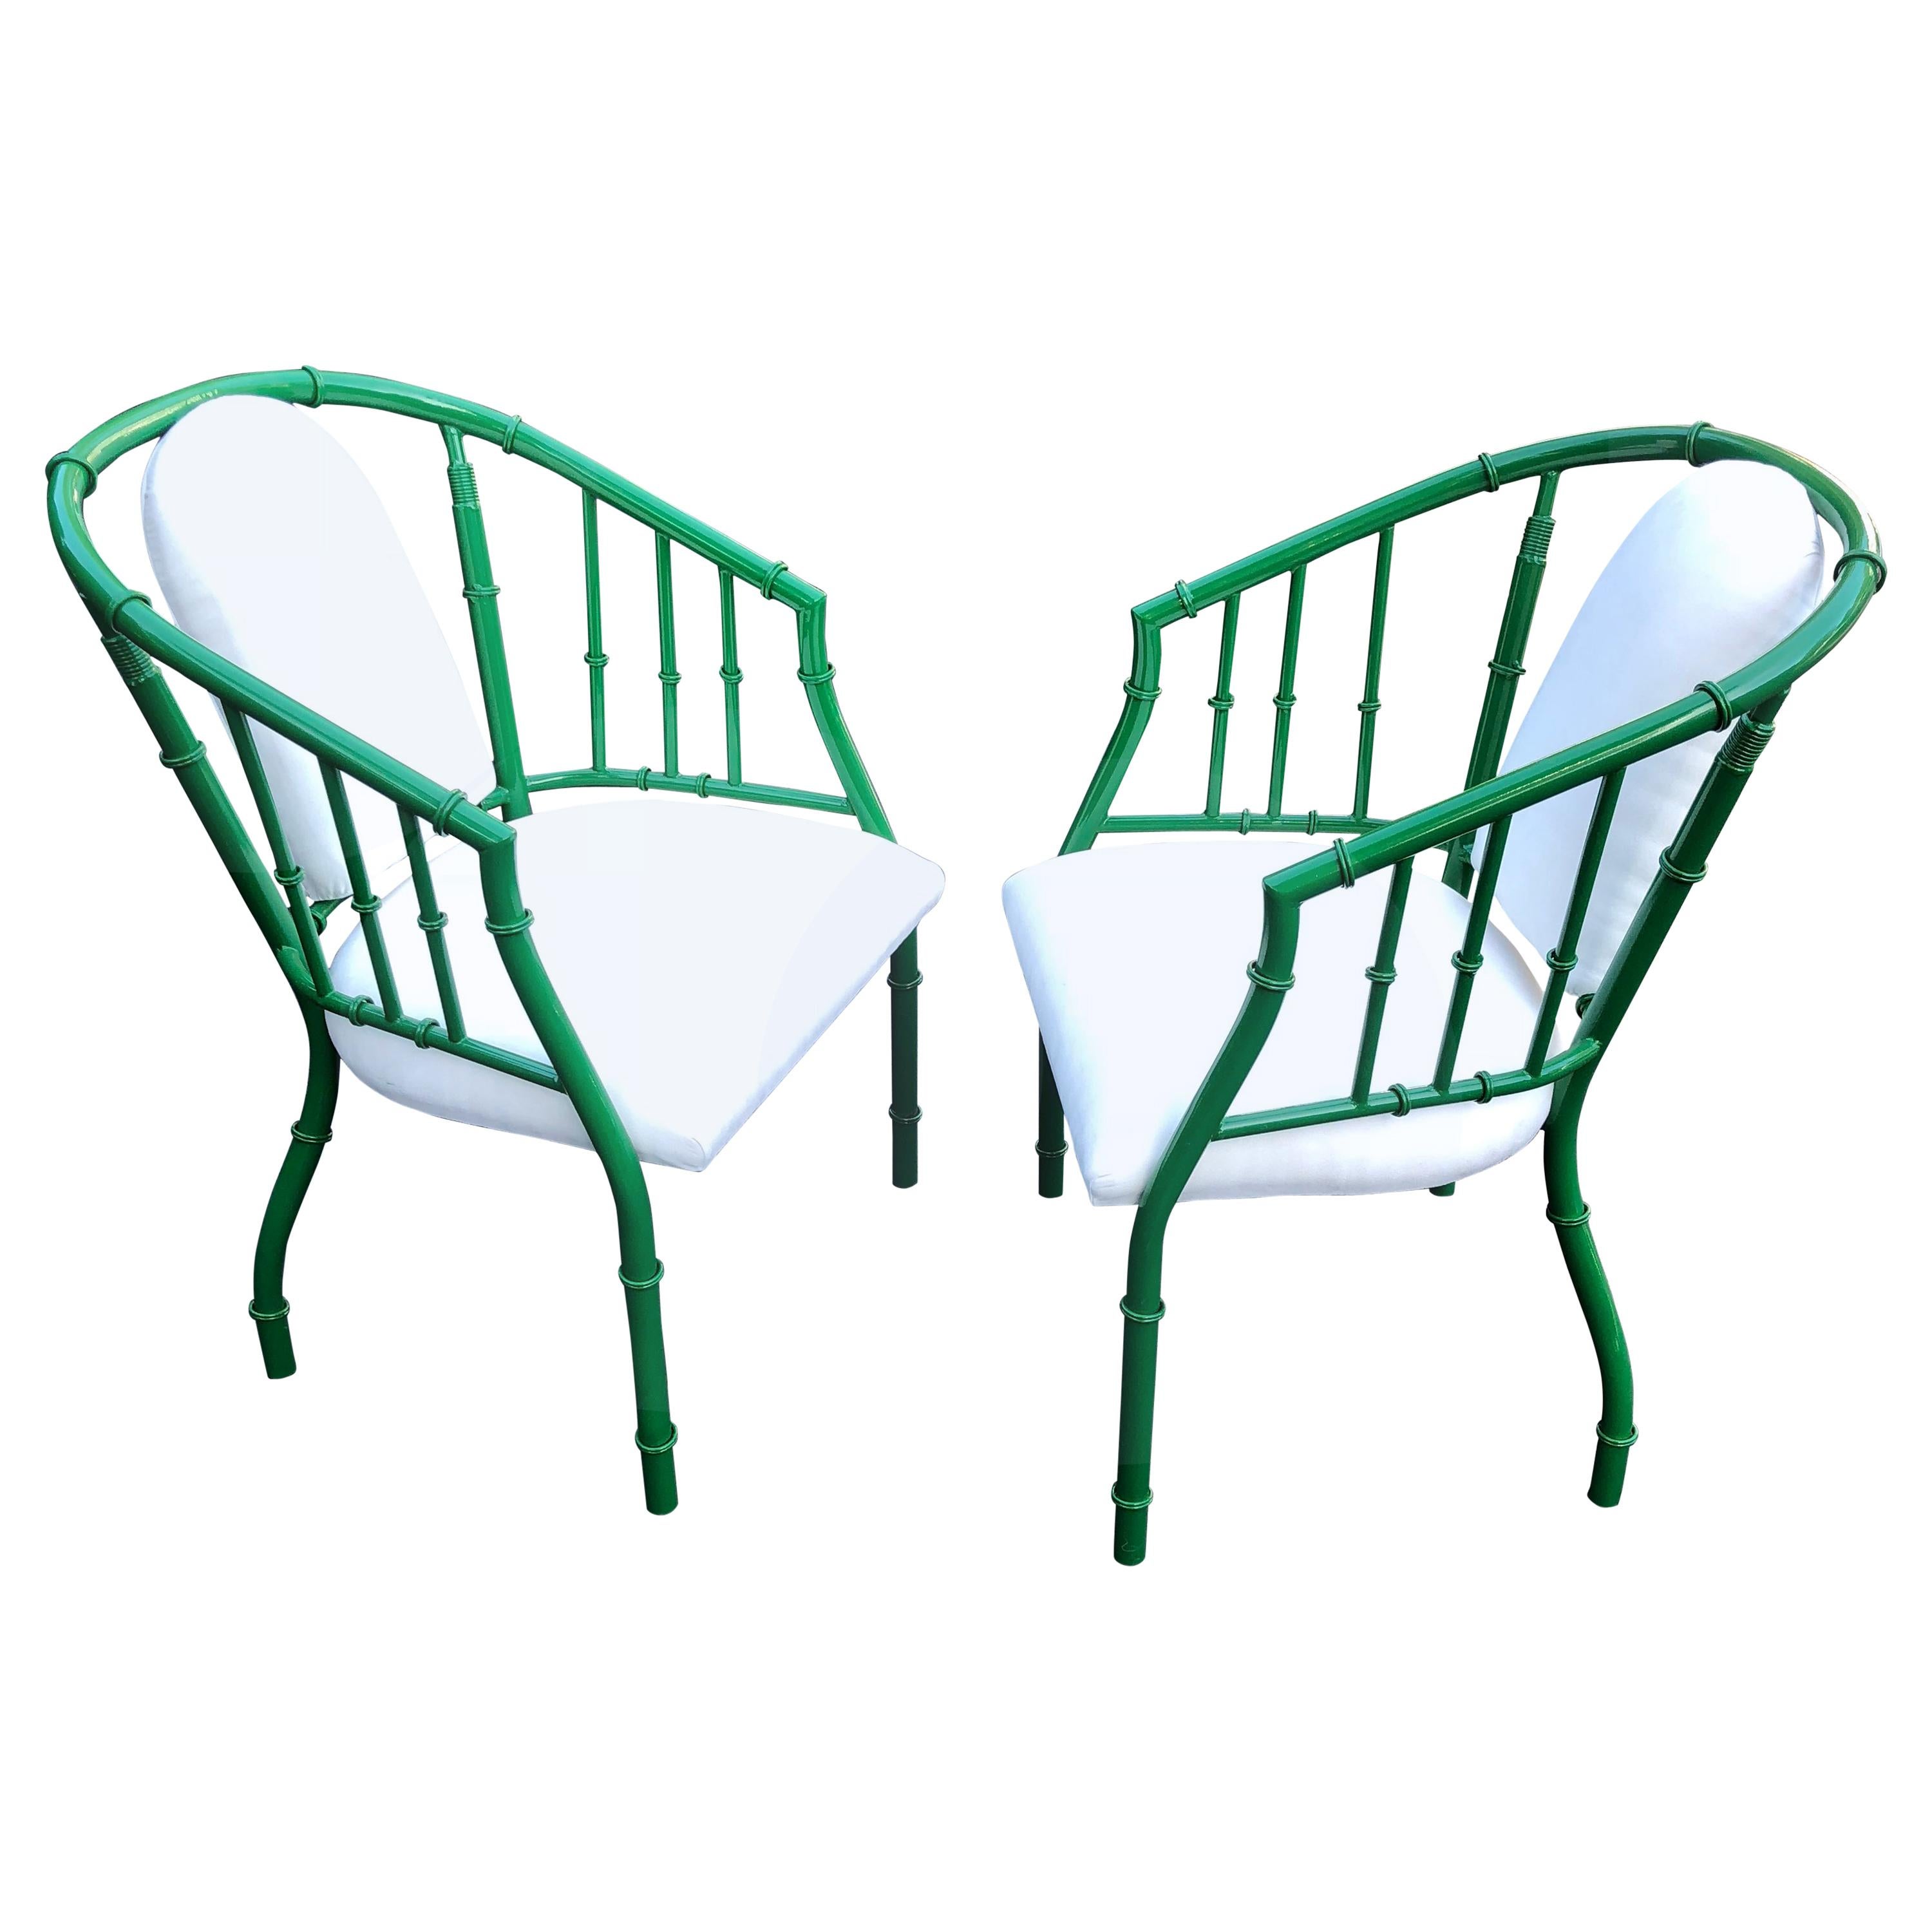 Paire de fauteuils en métal vert en faux bambou, de style français, datant du milieu du siècle dernier.
Nouvellement revêtu de poudre verte, le chrome d'origine était usé.
Nouvellement tapissé d'un faux daim blanc.

Livraison possible par le